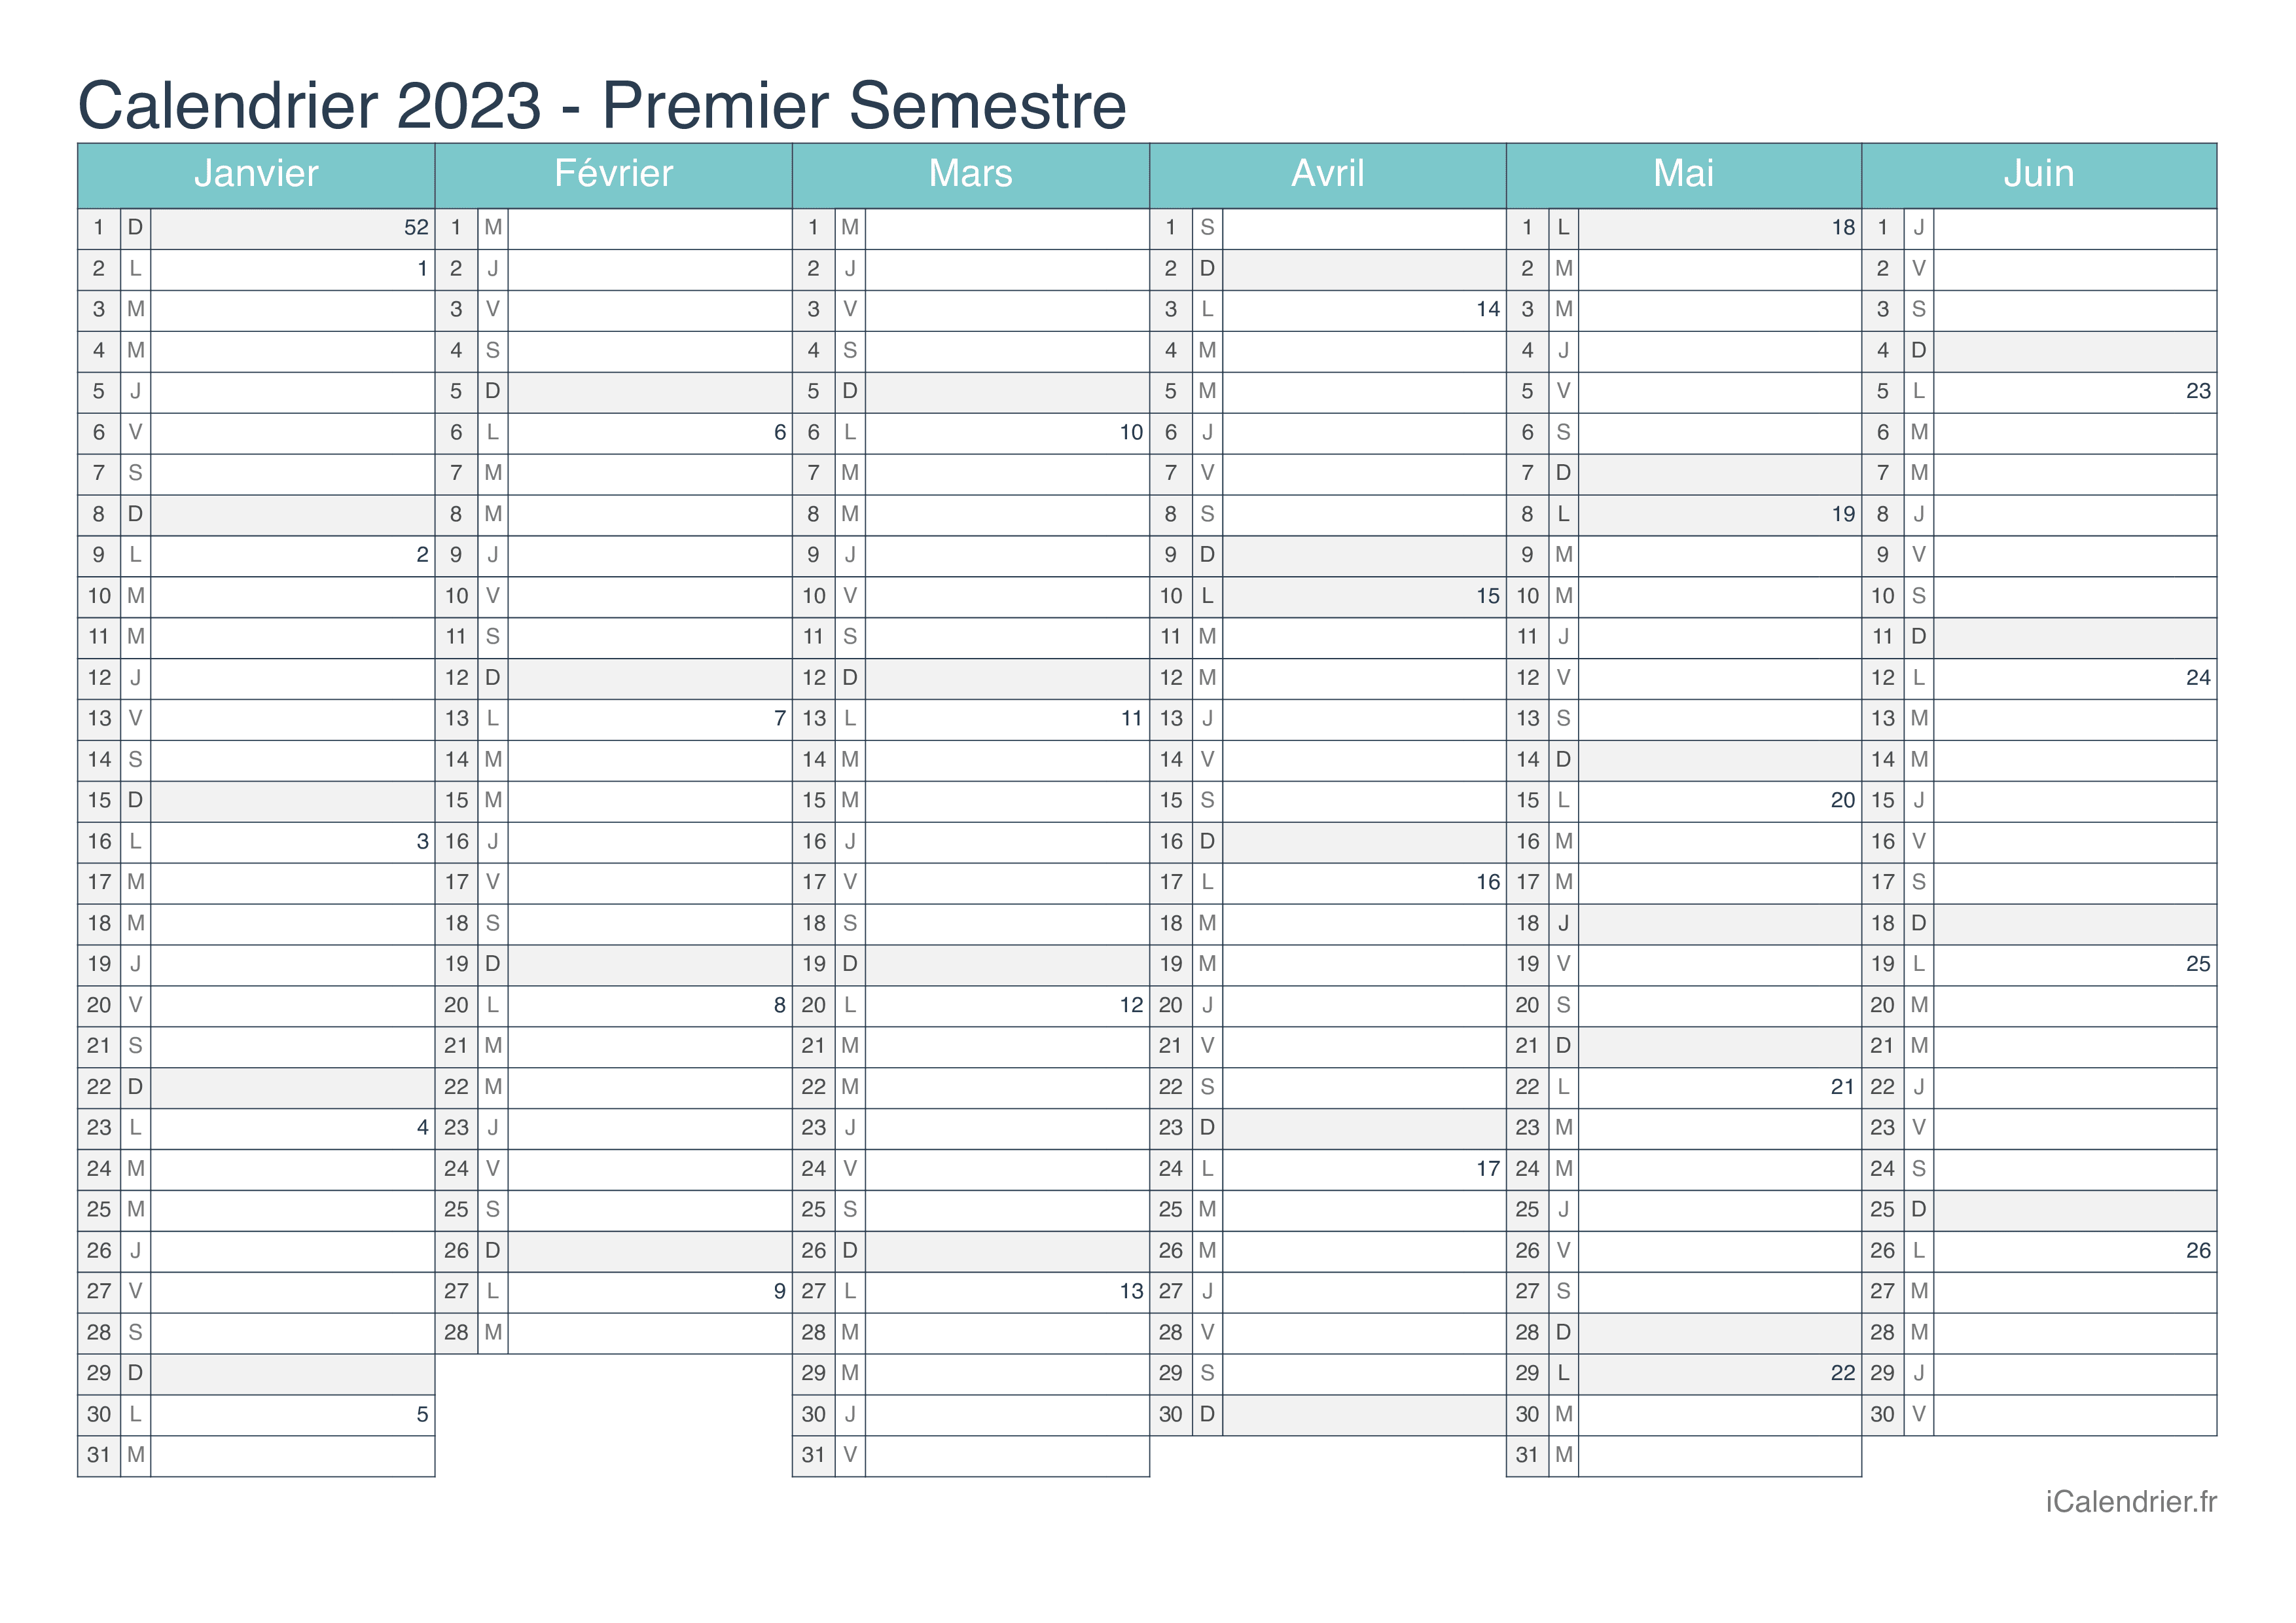 Calendrier par semestre avec numéros des semaines 2023 - Turquoise